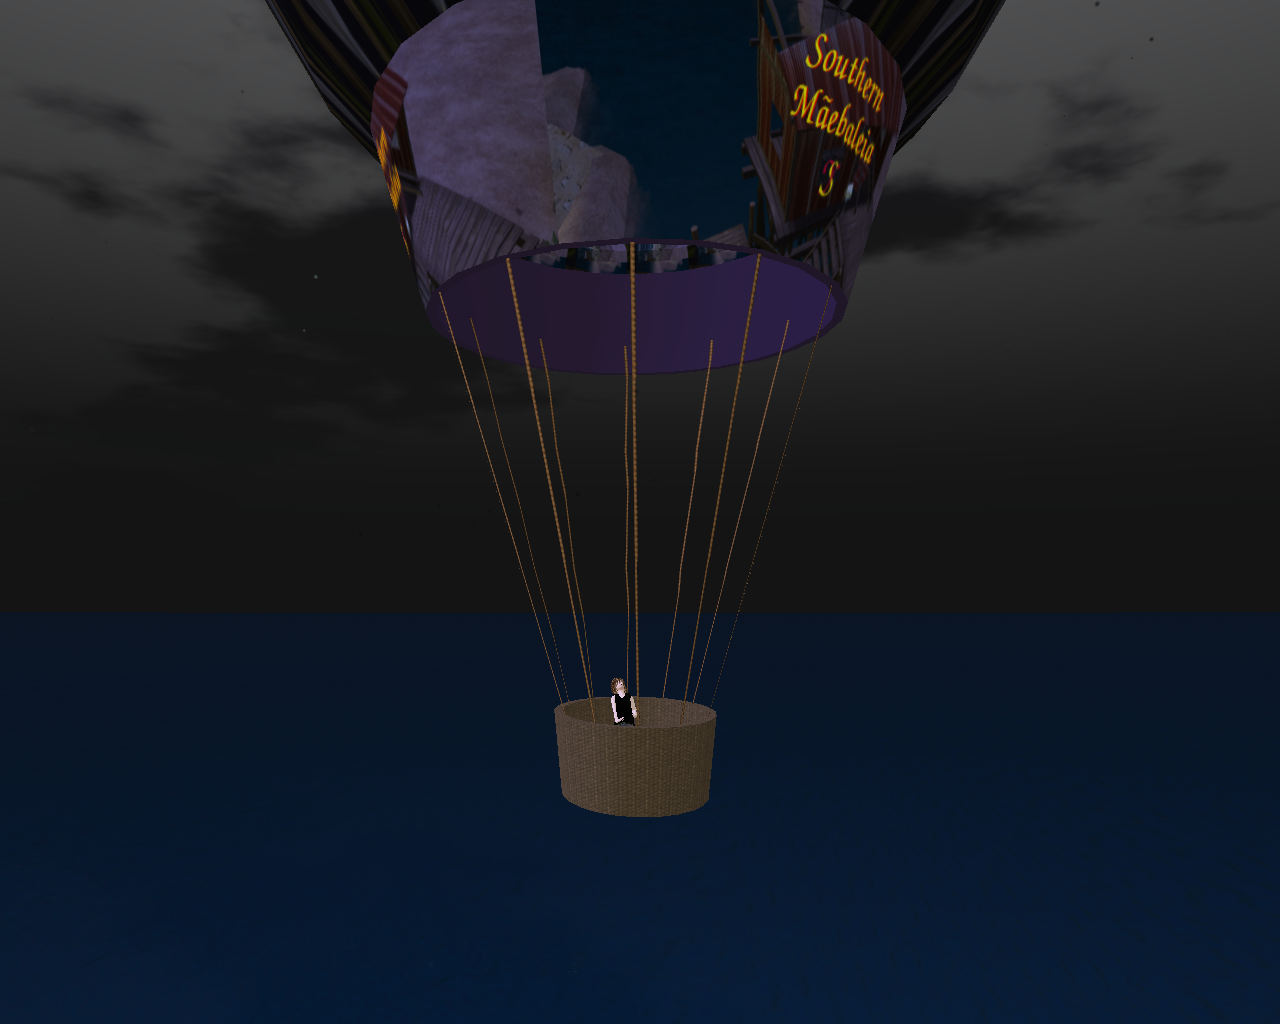 Mael riding a balloon